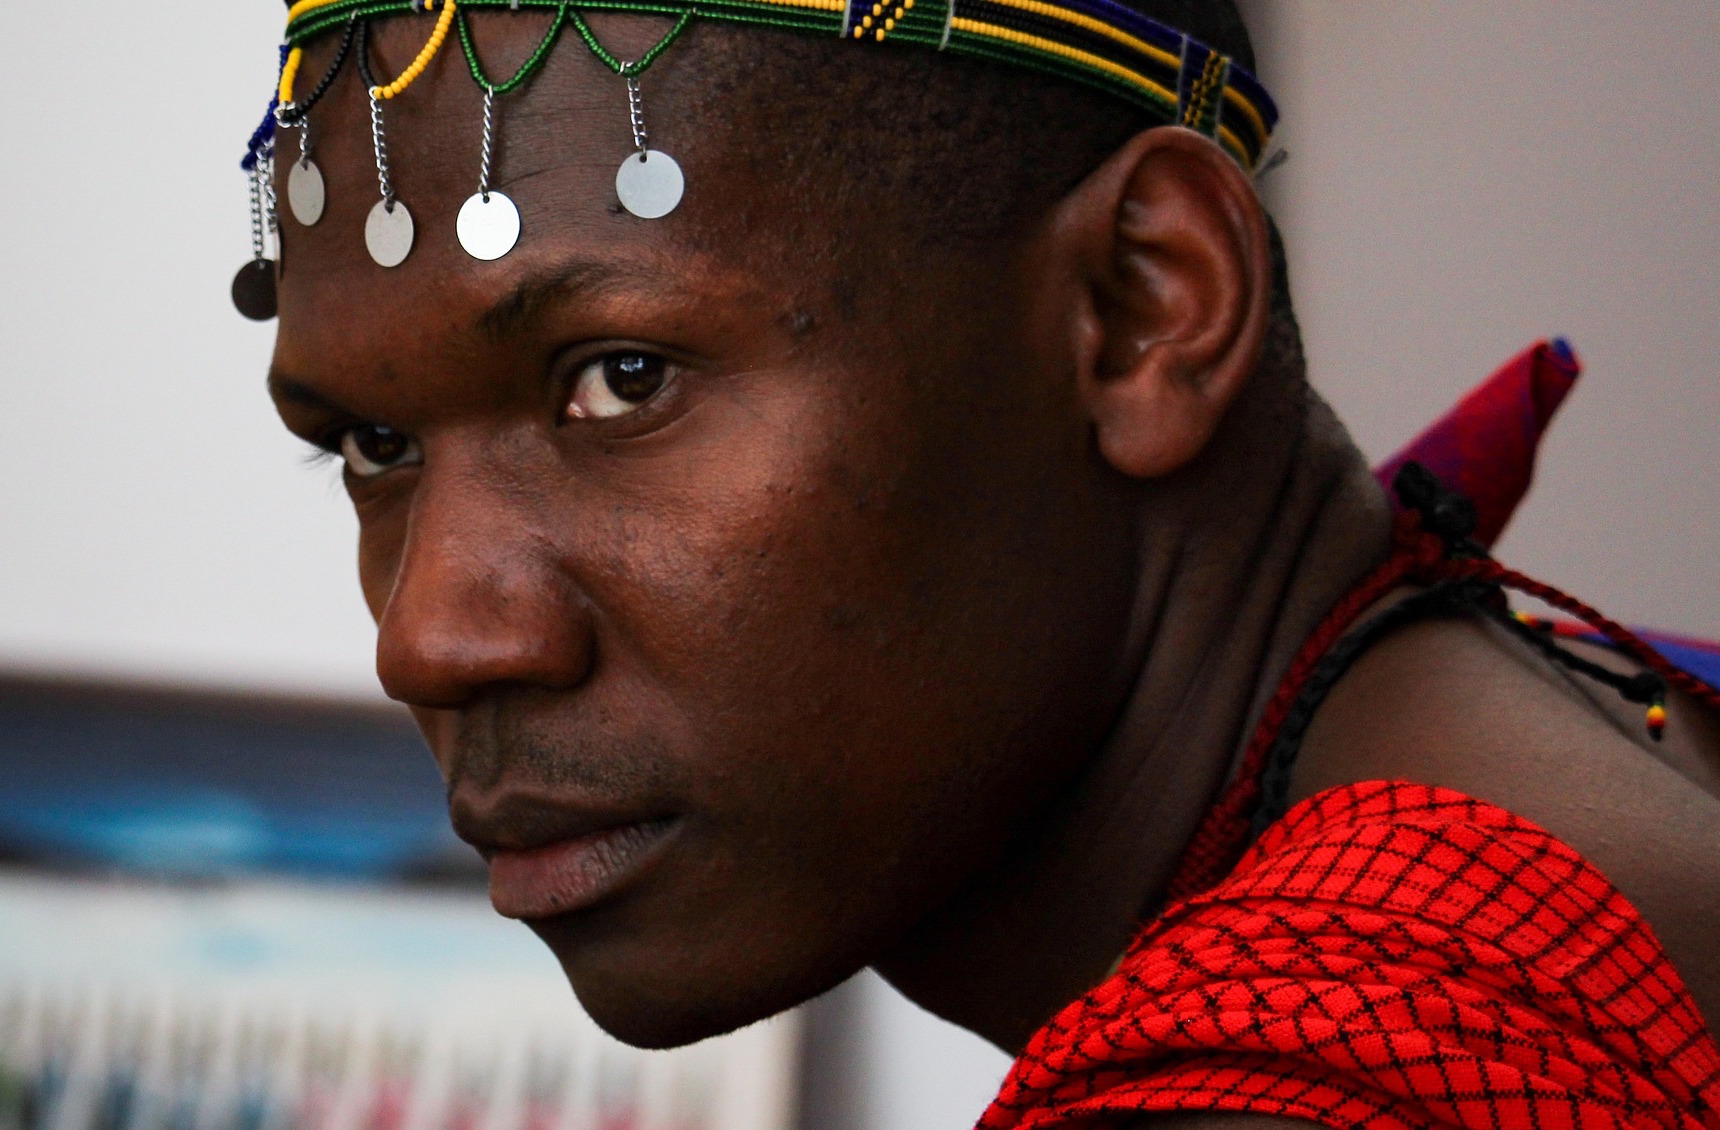 Afričtí utěšitelé: Po Masajích sní mnoho žen ze západních zemí